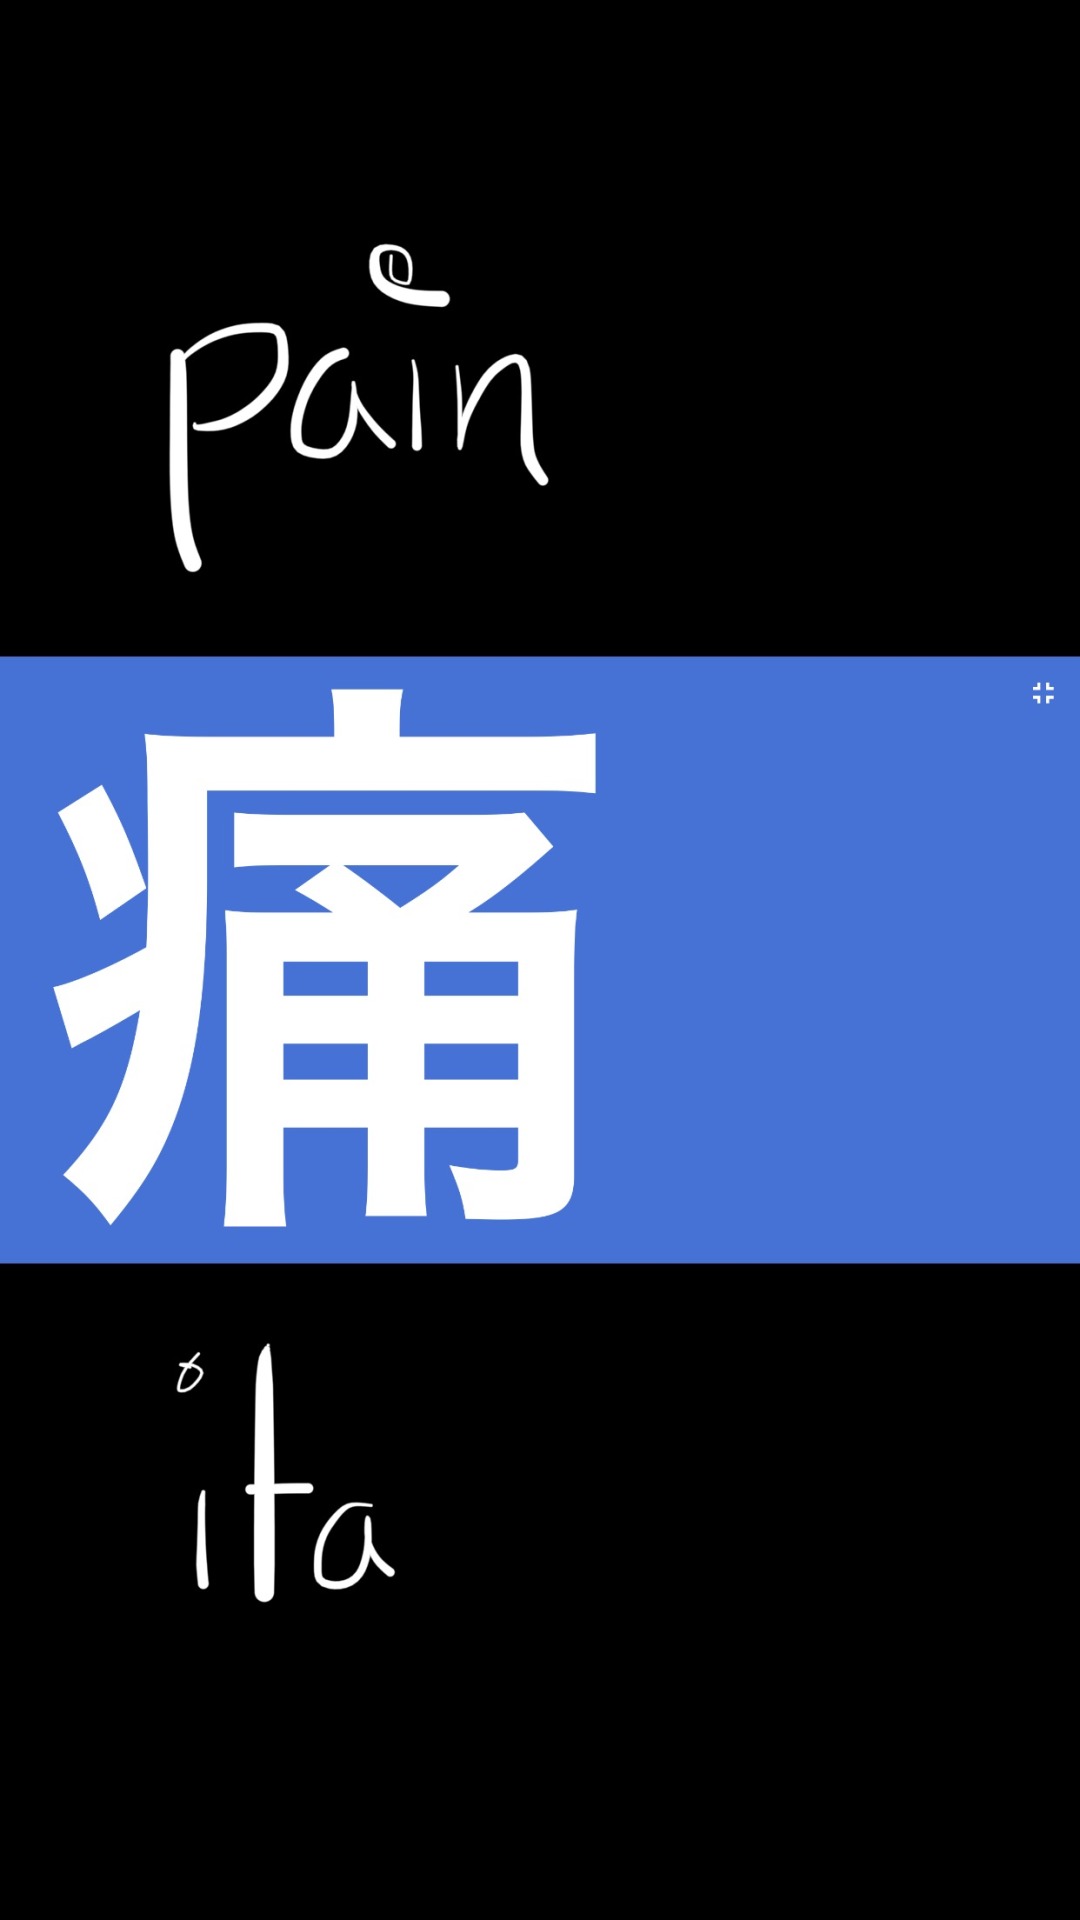 Kanji Wallpapers